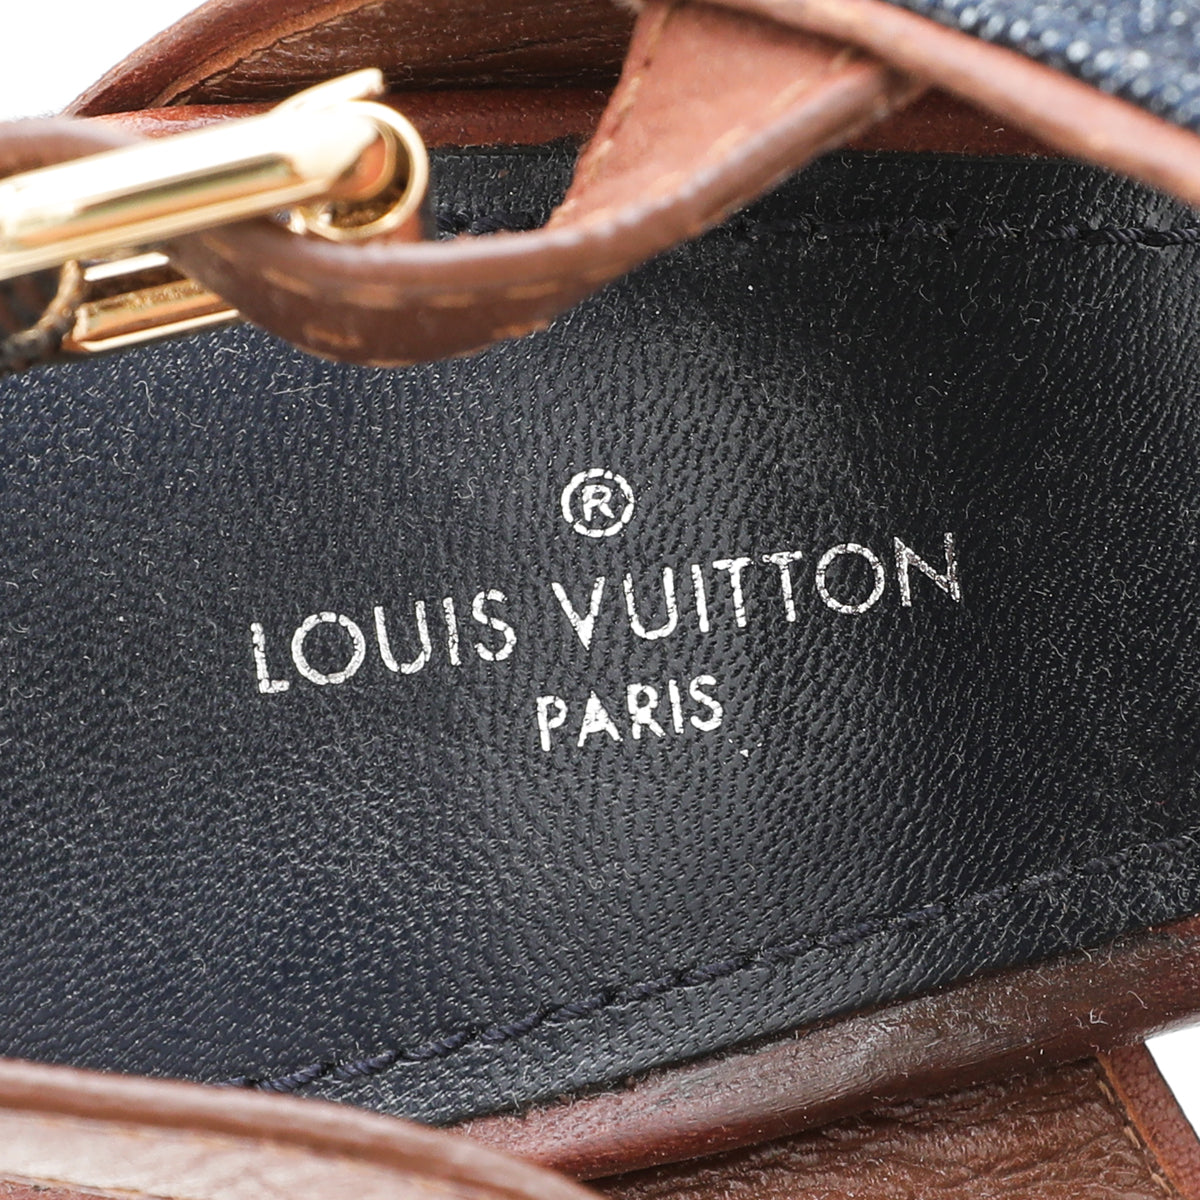 Louis Vuitton Waterfall Wedge Sandals in Navy Monogram Denim and Calfskin  Trim Size 37 GHW